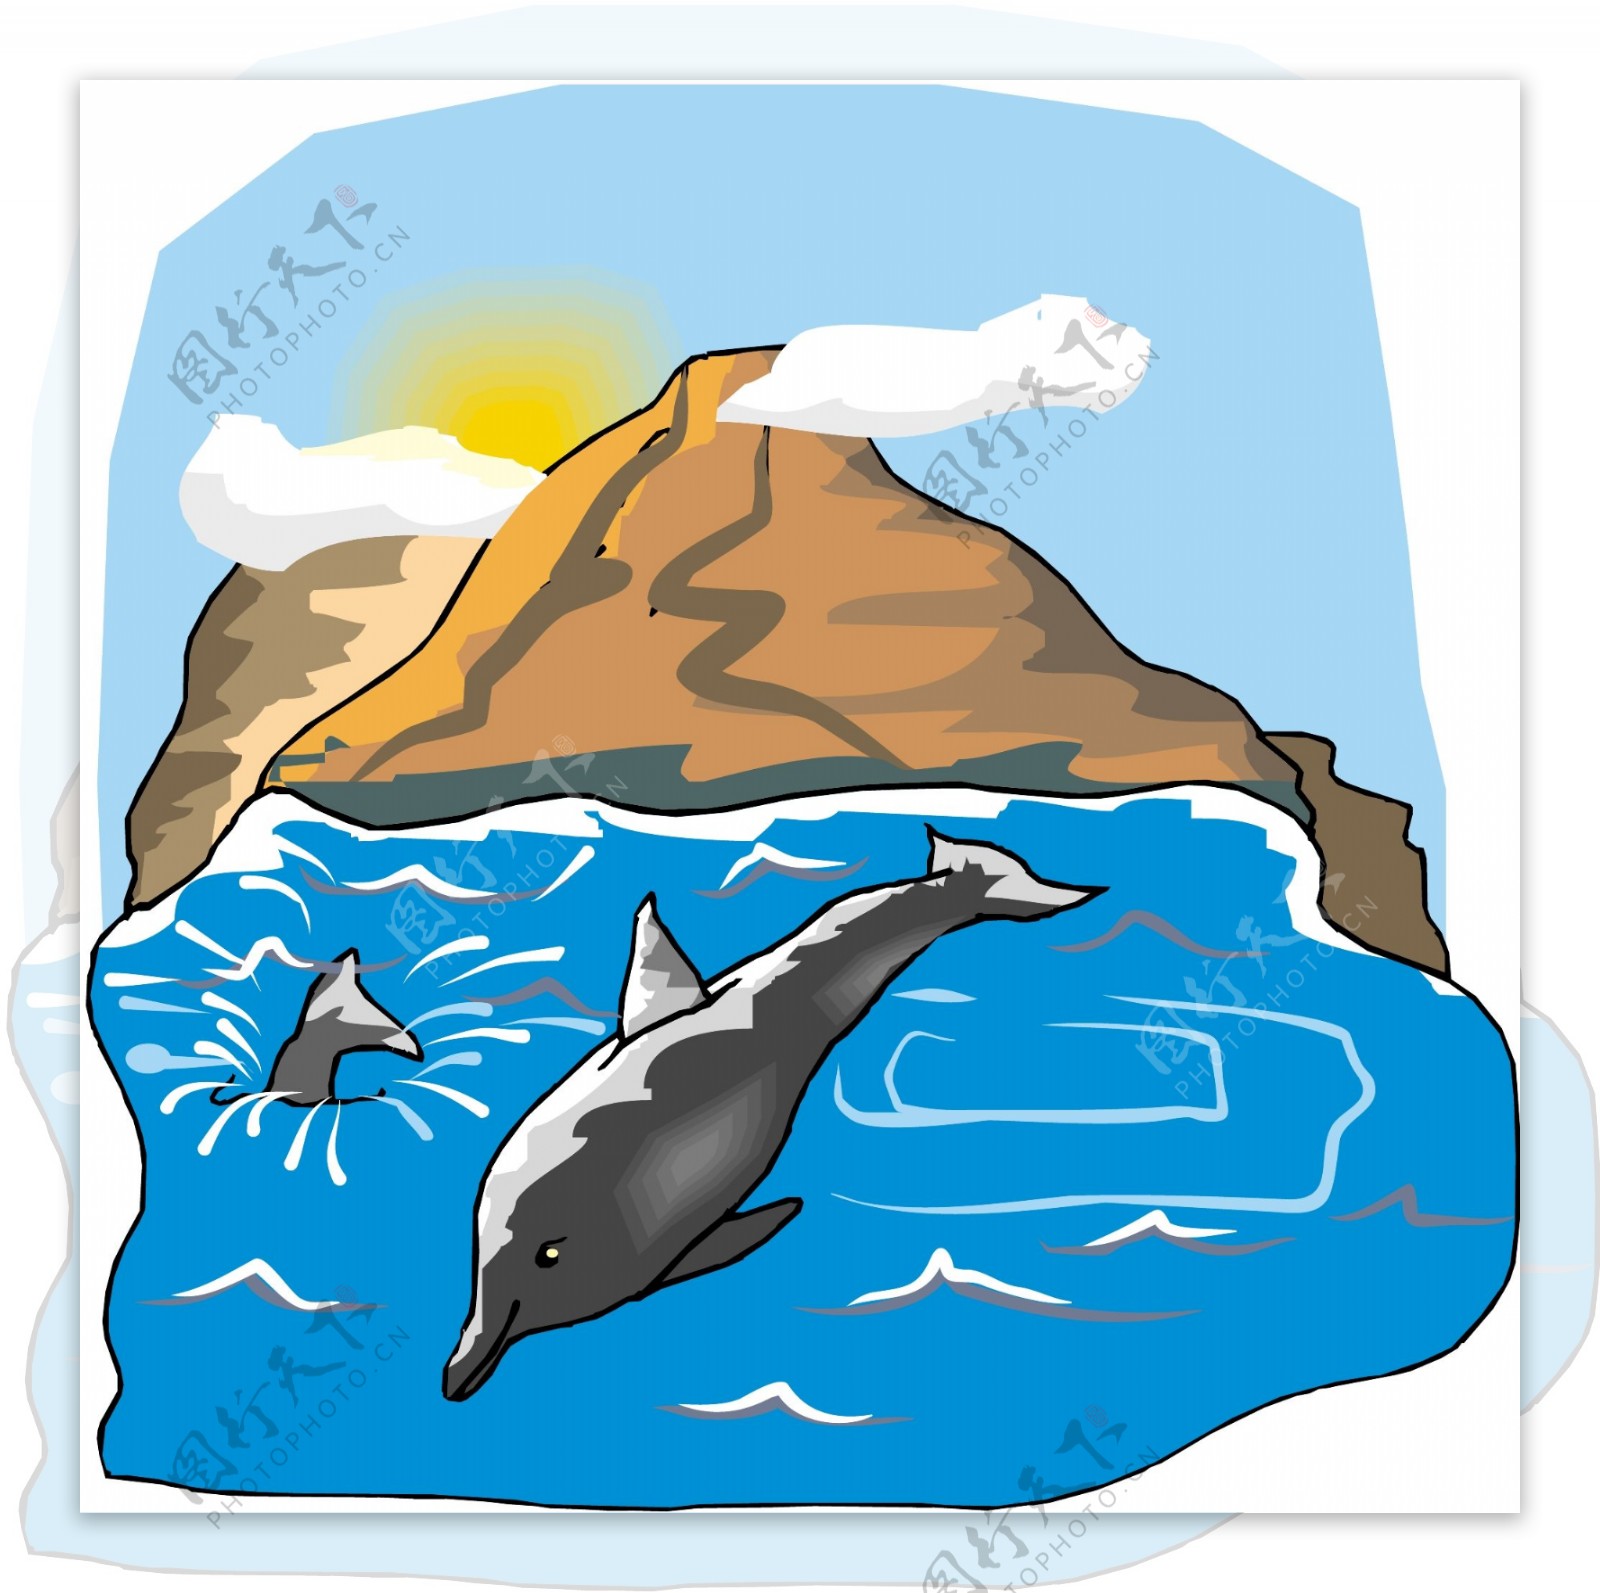 海豚水生动物矢量素材EPS格式0051